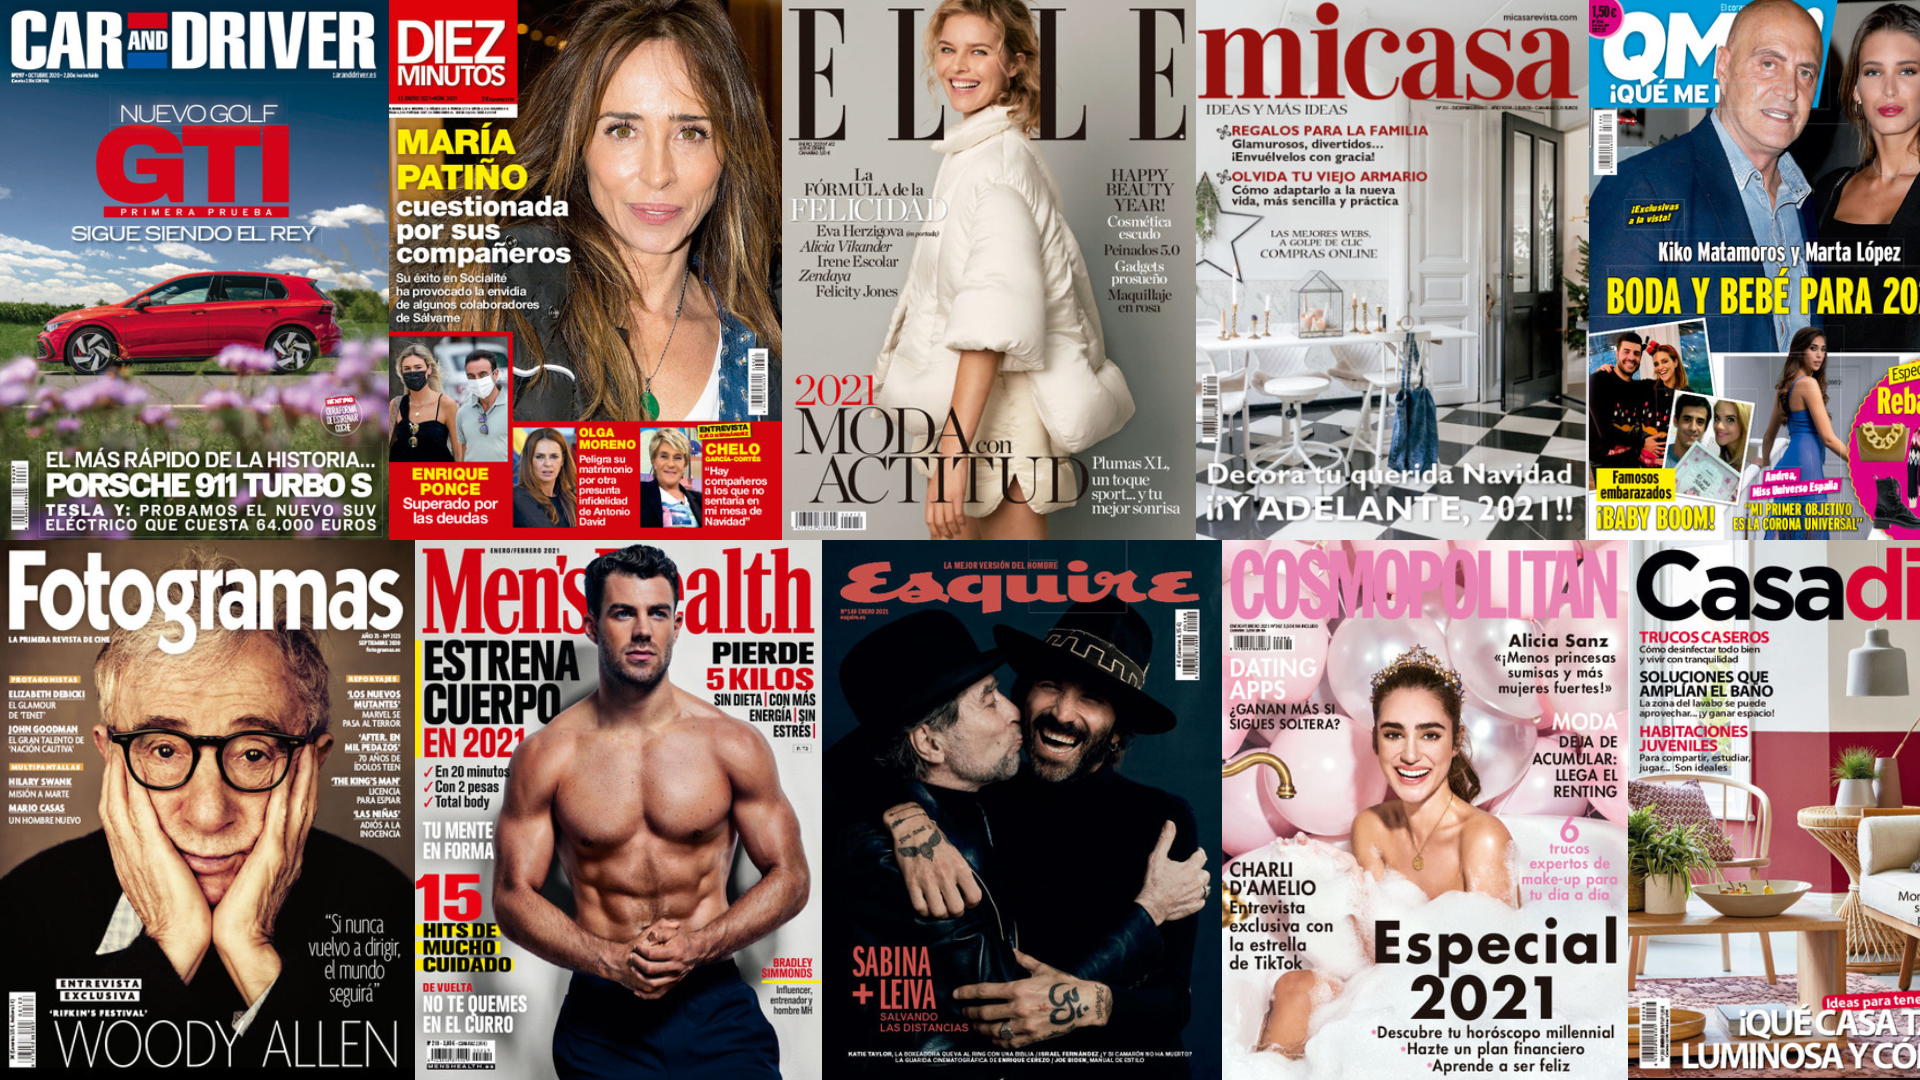 La editora de Elle y Cosmopolitan anuncia un ERE y el cierre de cabeceras en España